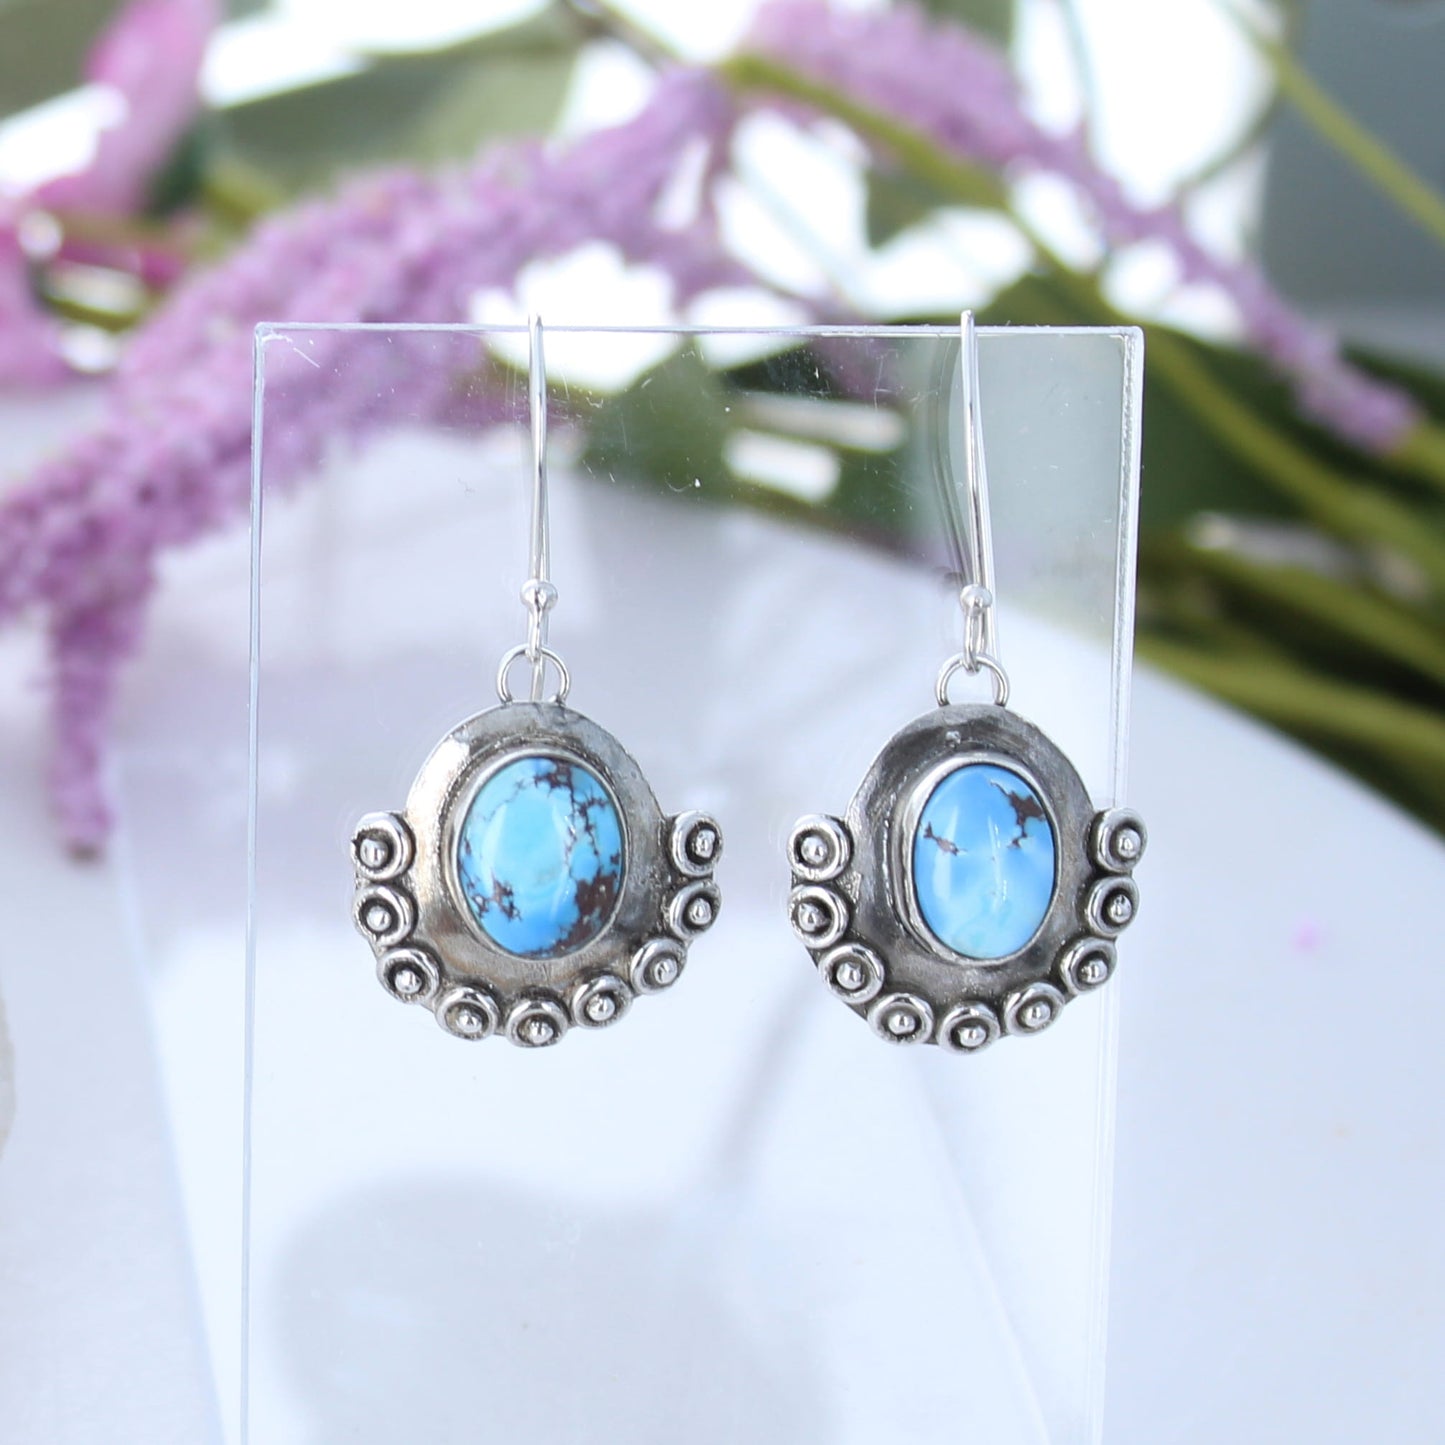 Kazakhstan Turquoise Earrings Sterling Silver Free Form Fancy Drops